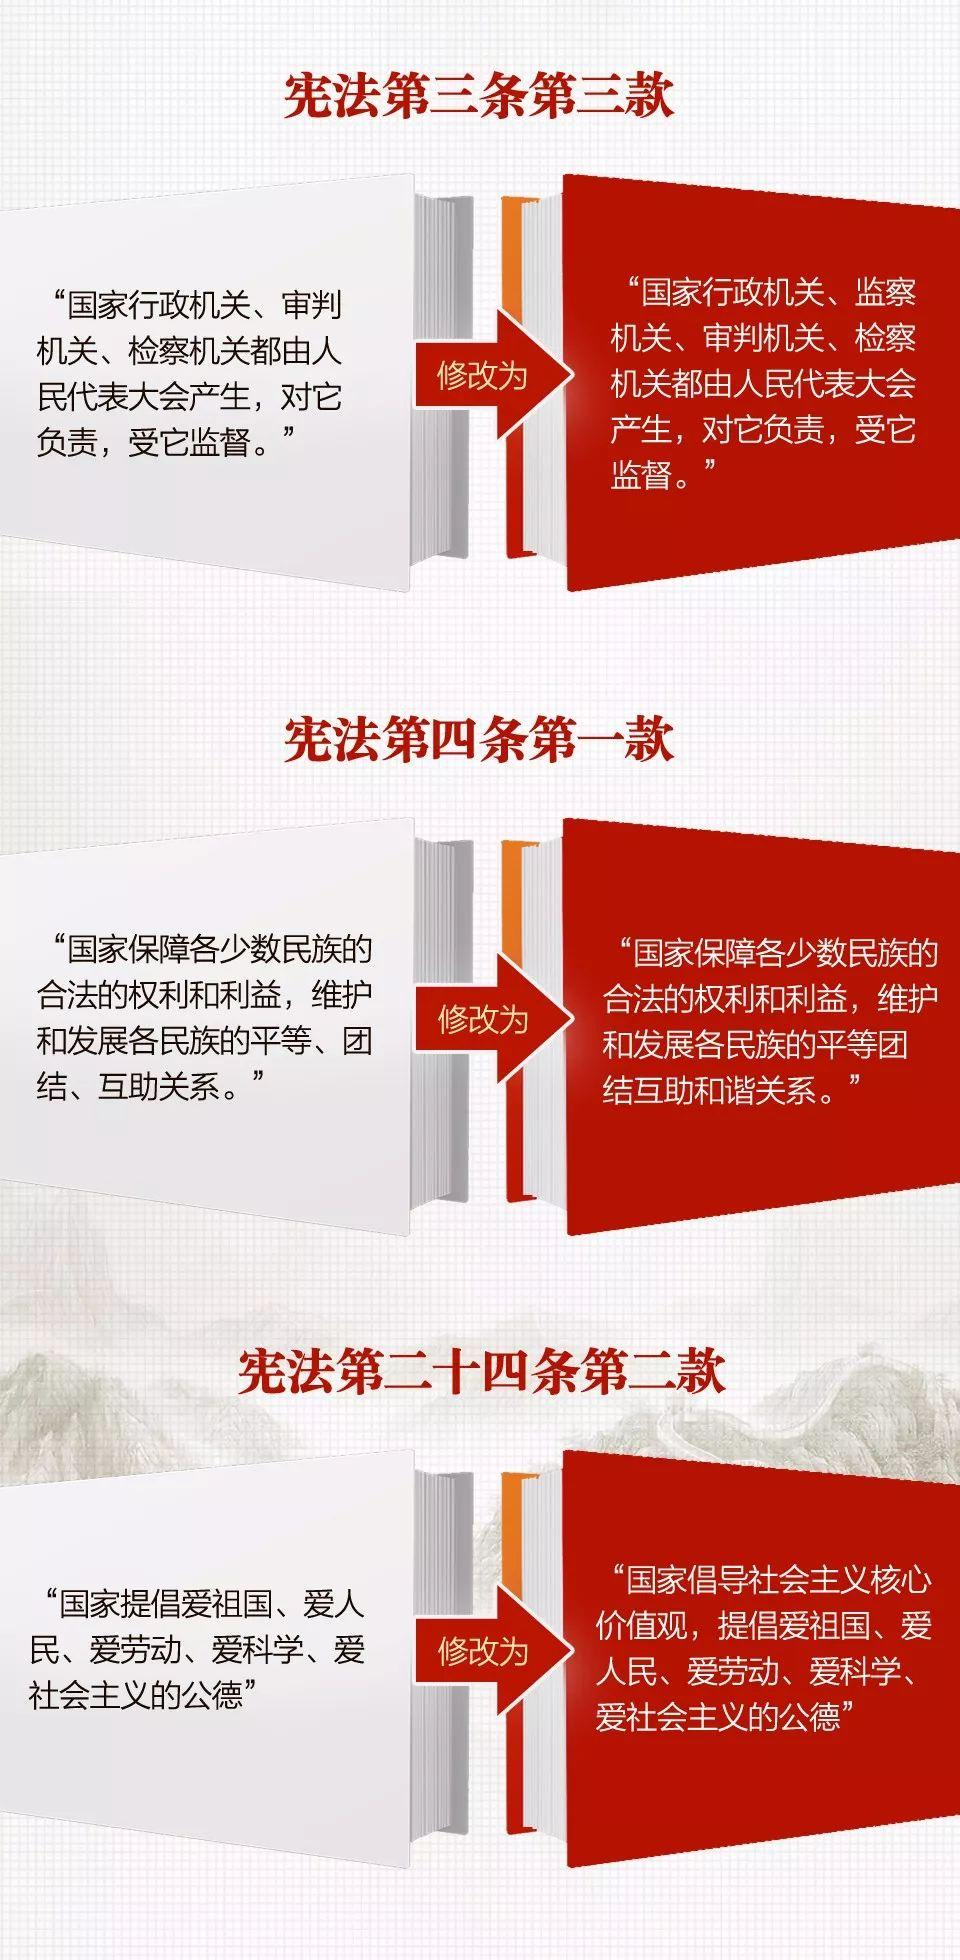 一张图,带你看懂《中华人民共和国宪法修正案》